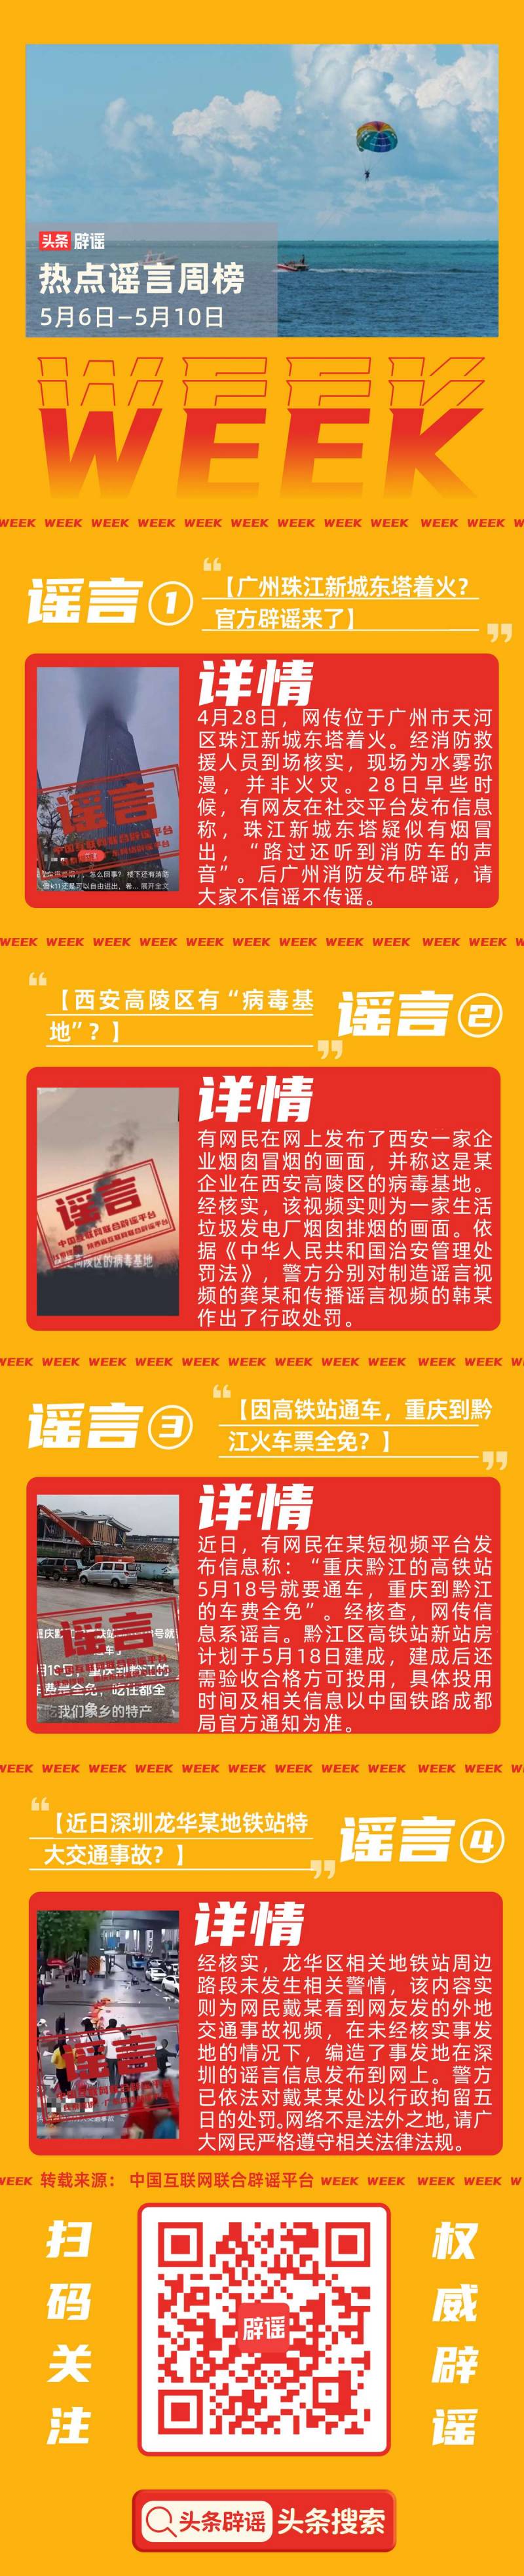 珠江新城東塔火災消息不實，官方澄清